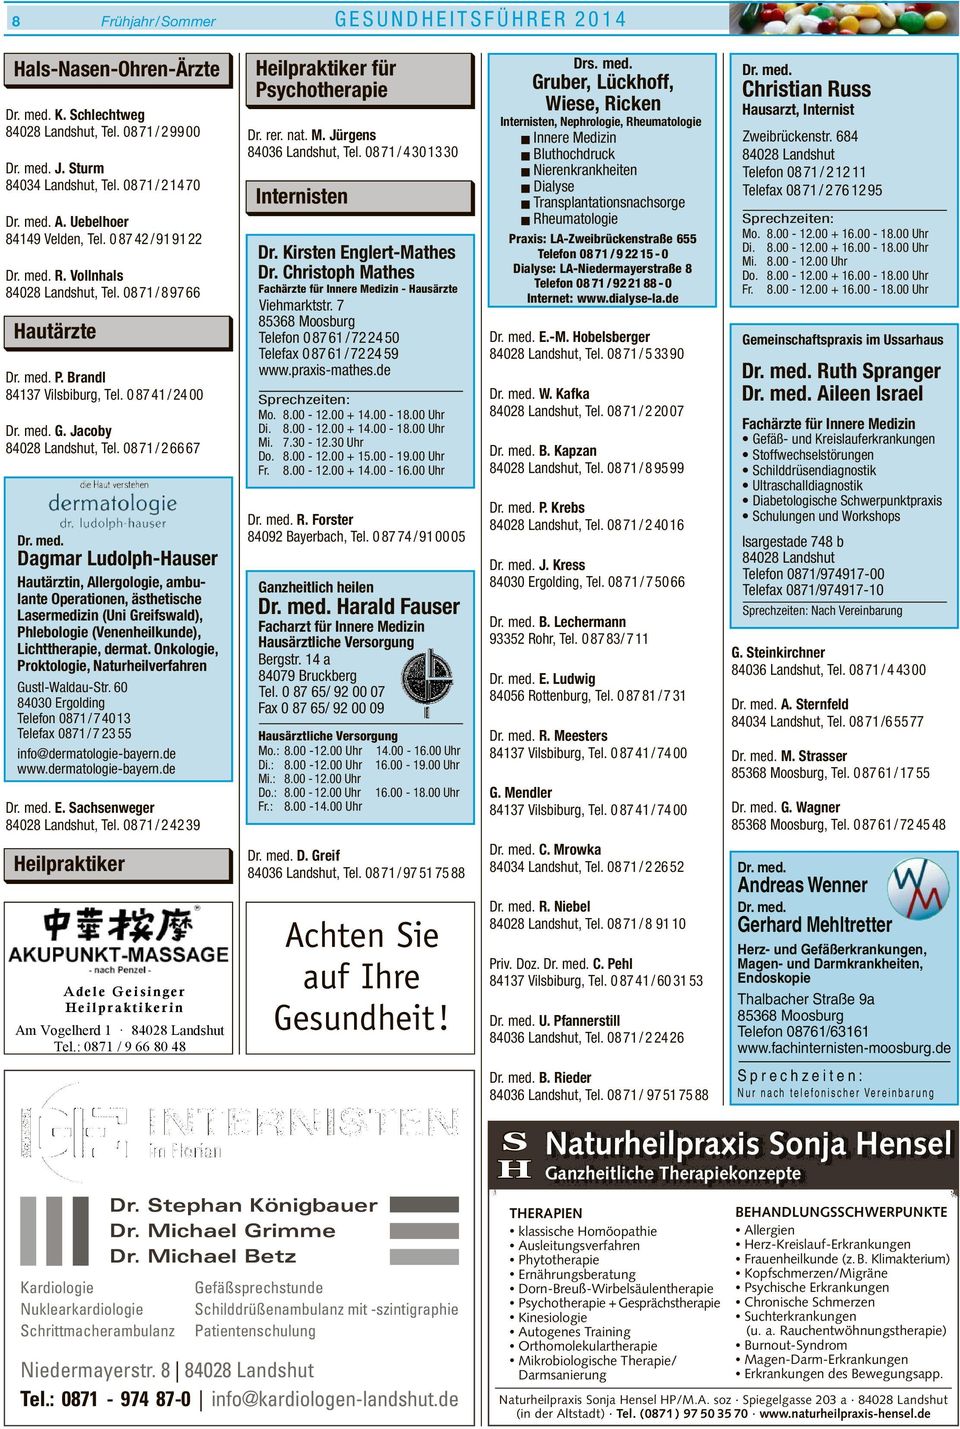 Dagmar Ludolph-Hauser Hautärztin, Allergologie, ambulante Operationen, ästhetische Lasermedizin (Uni Greifswald), Phlebologie (Venenheilkunde), Lichttherapie, dermat.